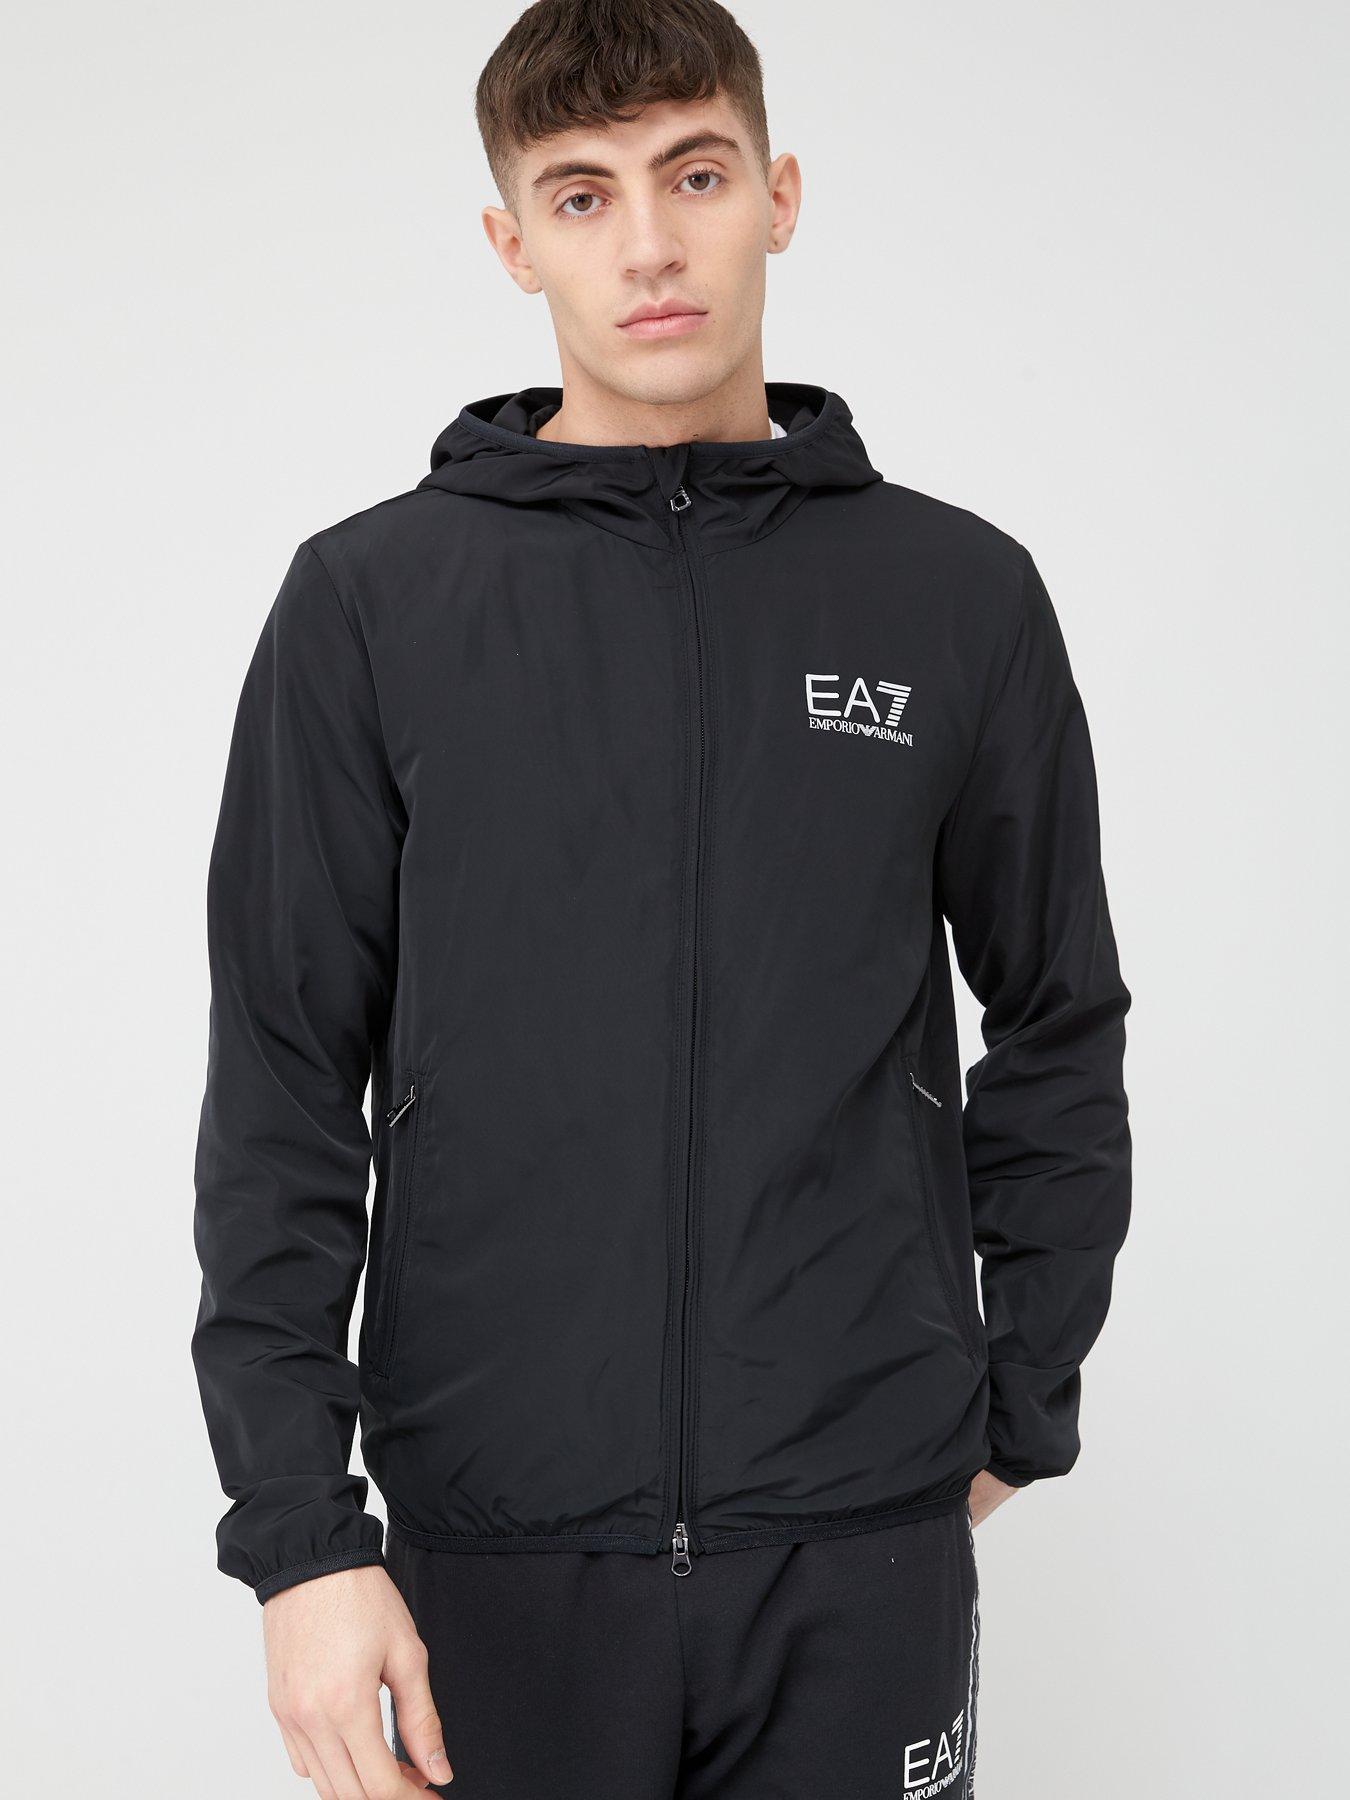 mens ea7 jacket sale